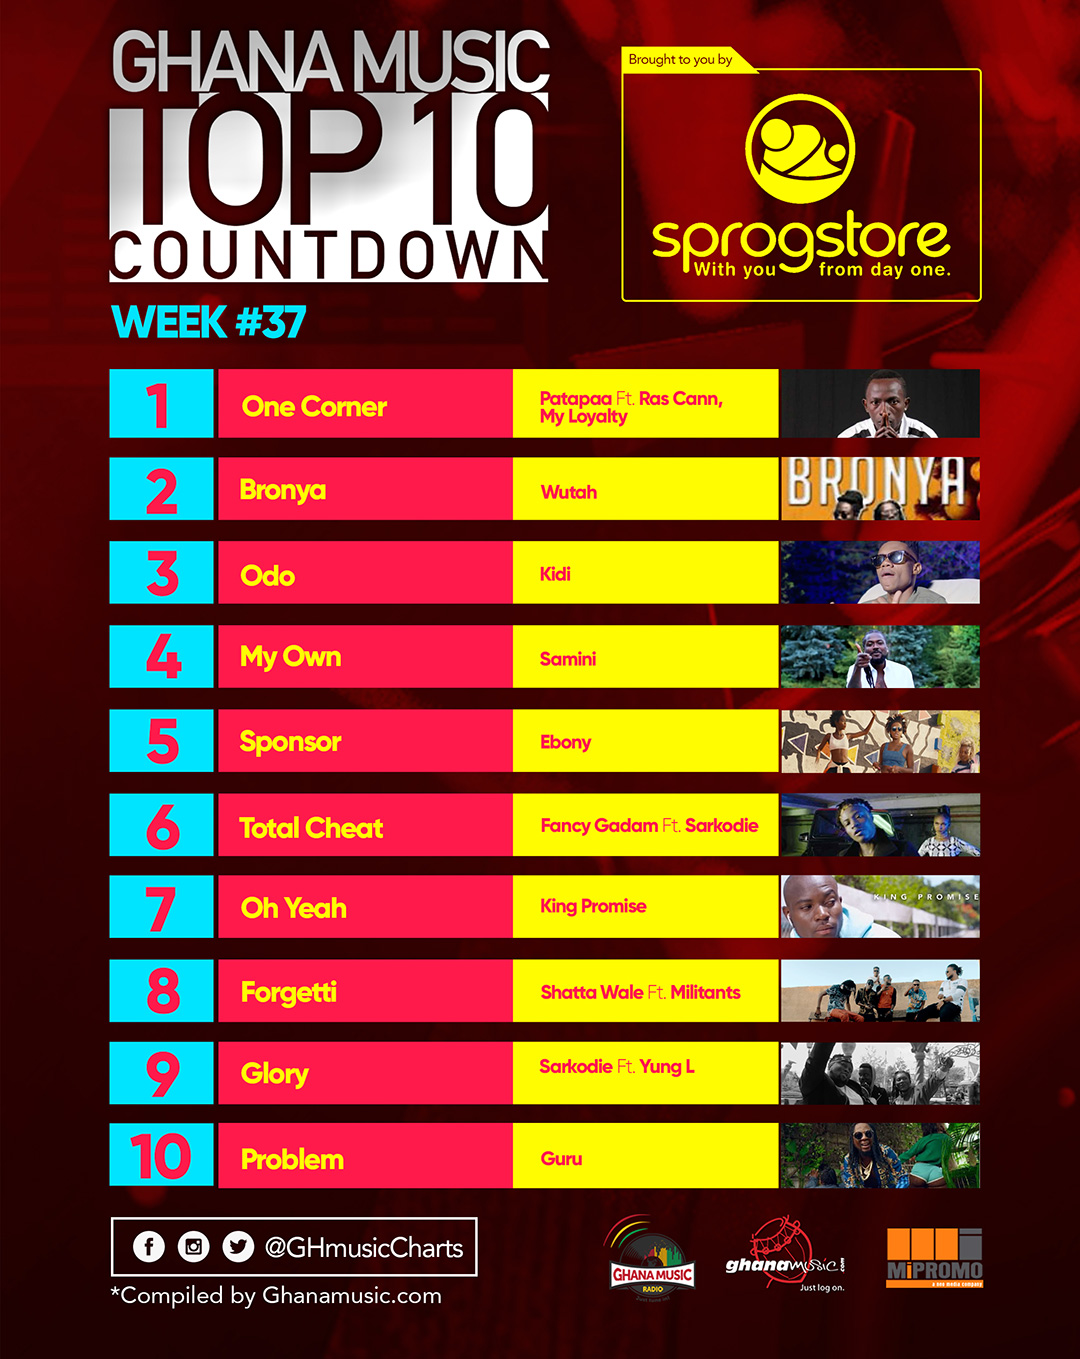 Week #37: Week ending Saturday, September 17th, 2017. Ghana Music Top 10 Countdown.